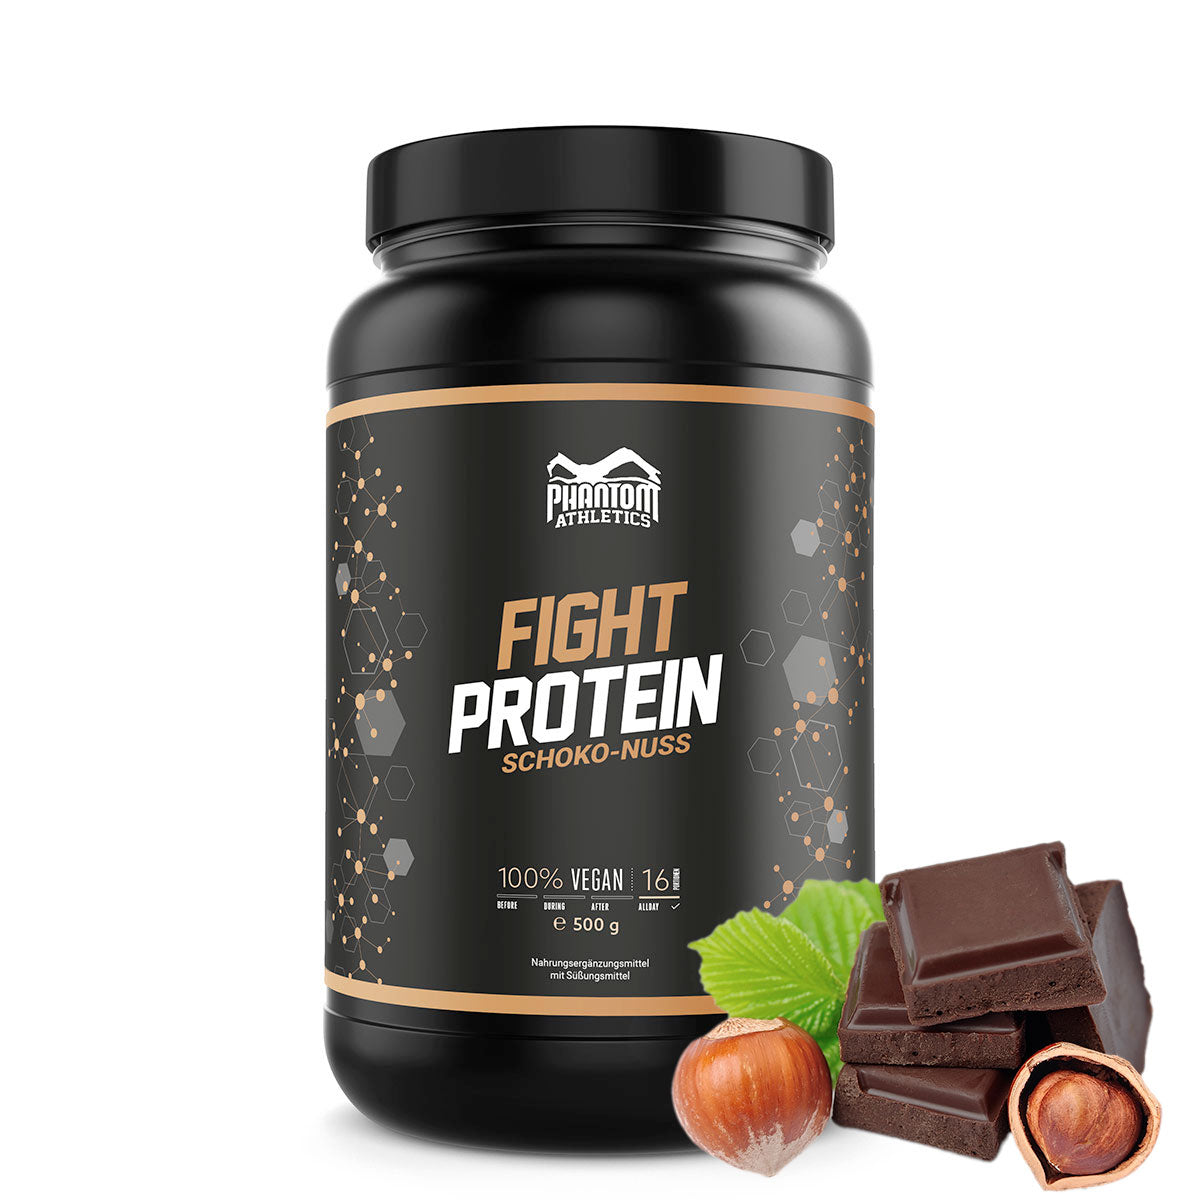 Phantom FIGHT protein til kampsportsudøvere med smag af chokolade nødder.